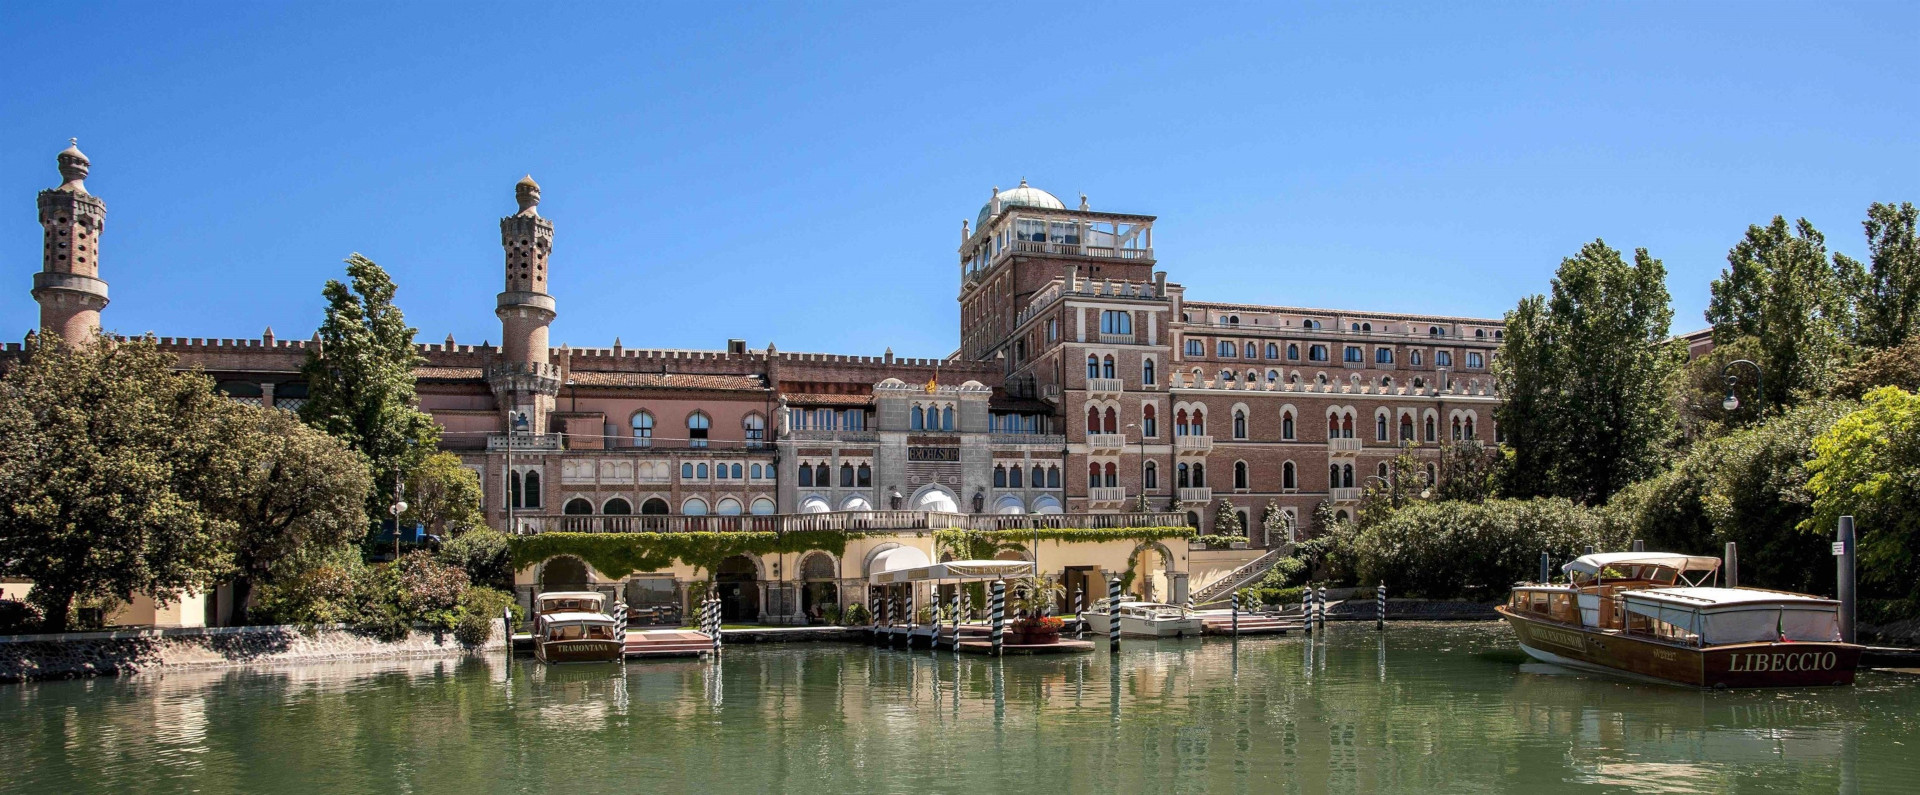 esterno hotel excelsior venezia lido cinque stelle lusso resort arredi realizzati dal gruppo rodi 